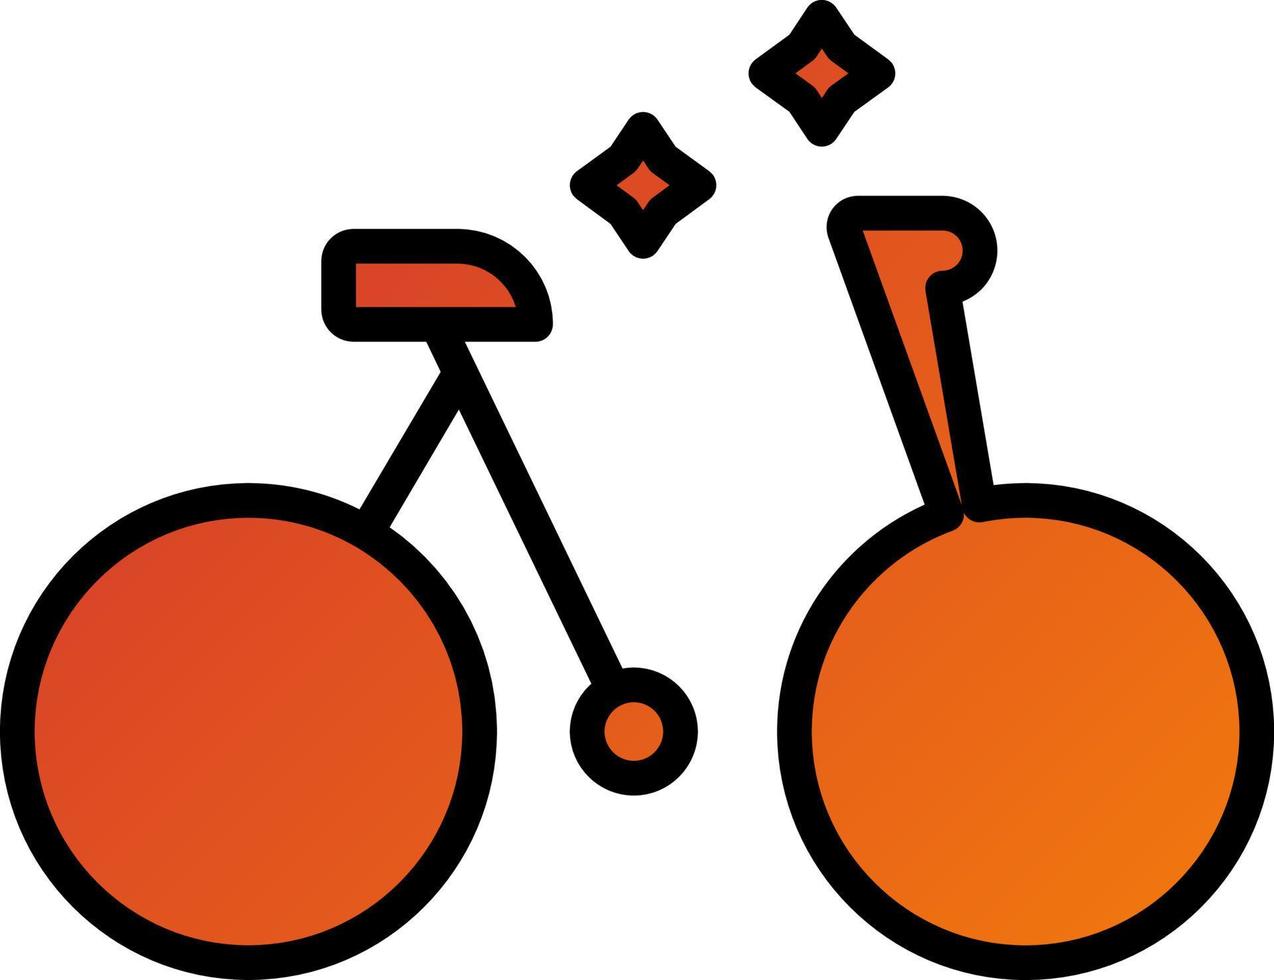 estilo de icono de bicicleta vector